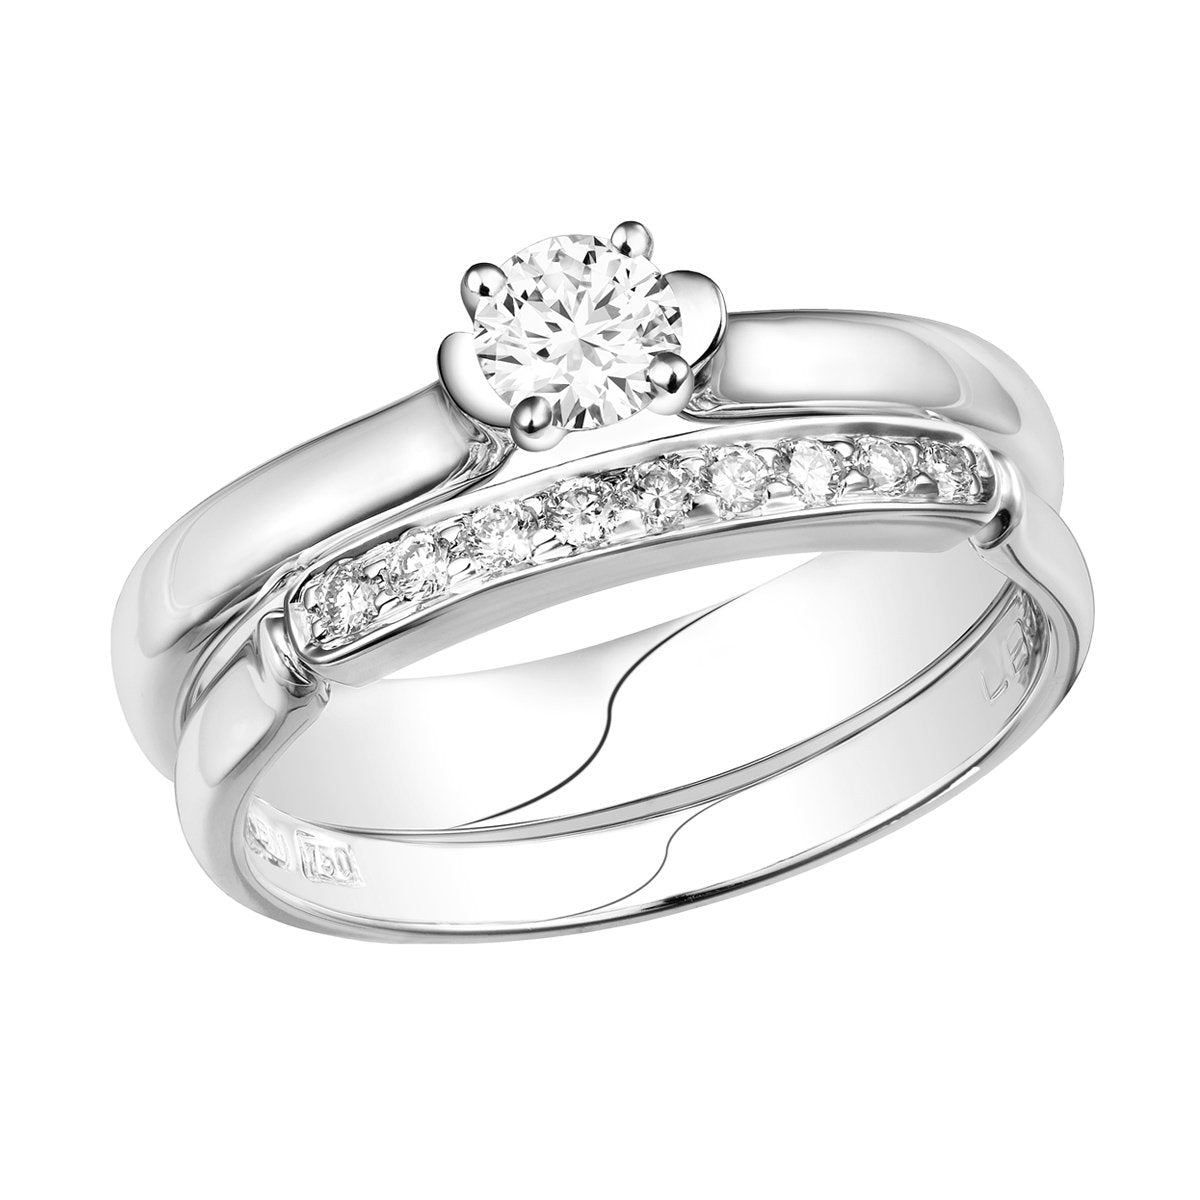 Leora diamond ring & diamond band